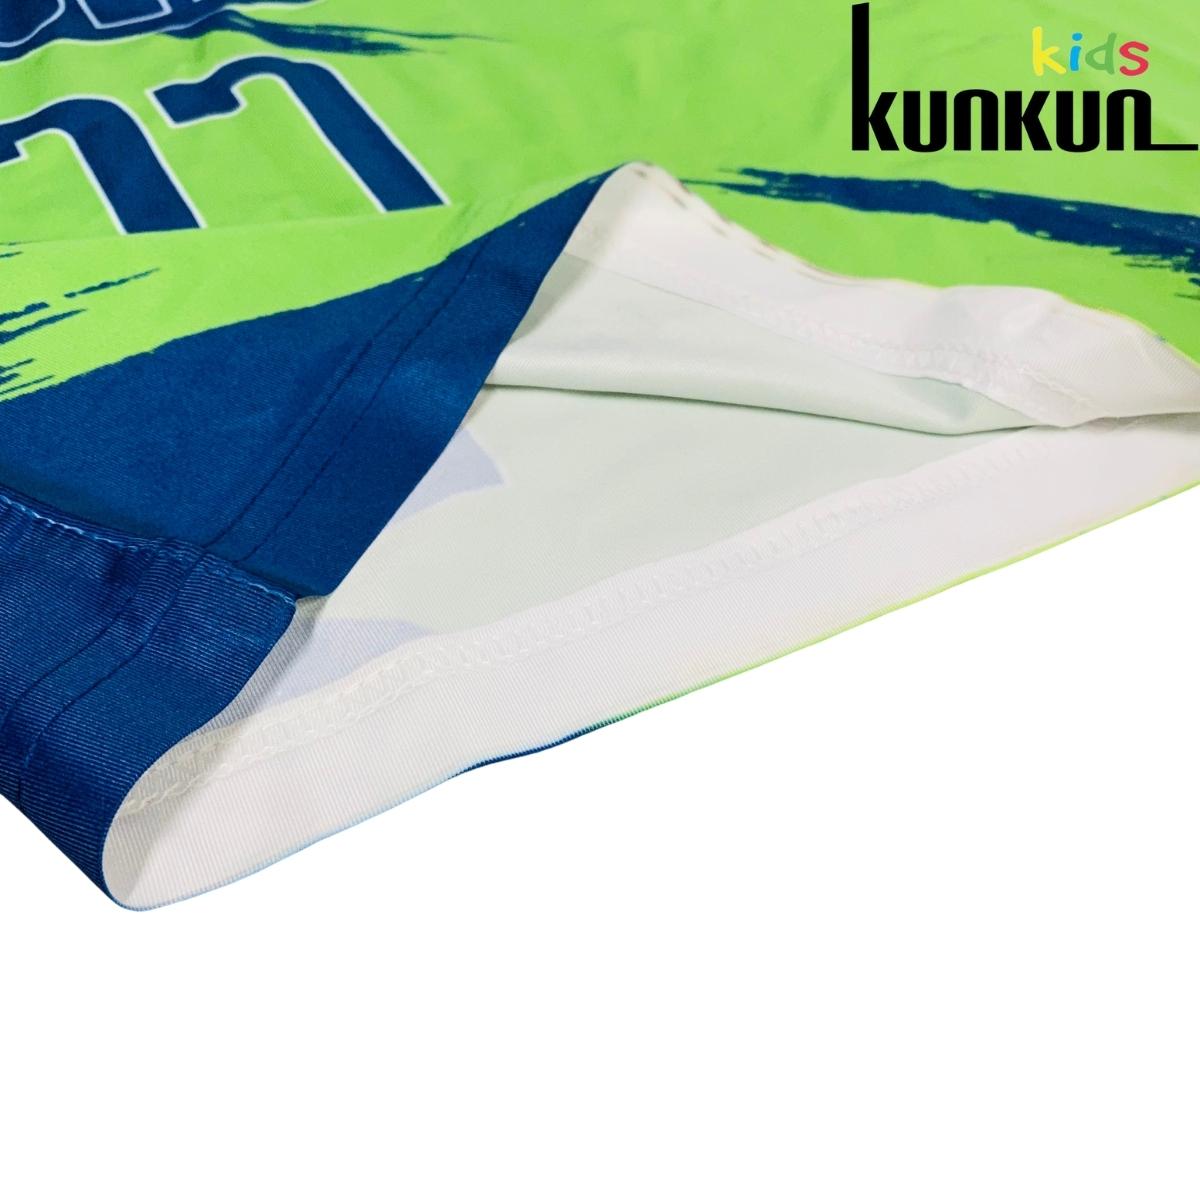 Bộ thể thao bé trai KUNKUN KID TT002 in số 77 dallas tay ngắn chất thun lạnh thoáng mát size đại từ 10-60kg